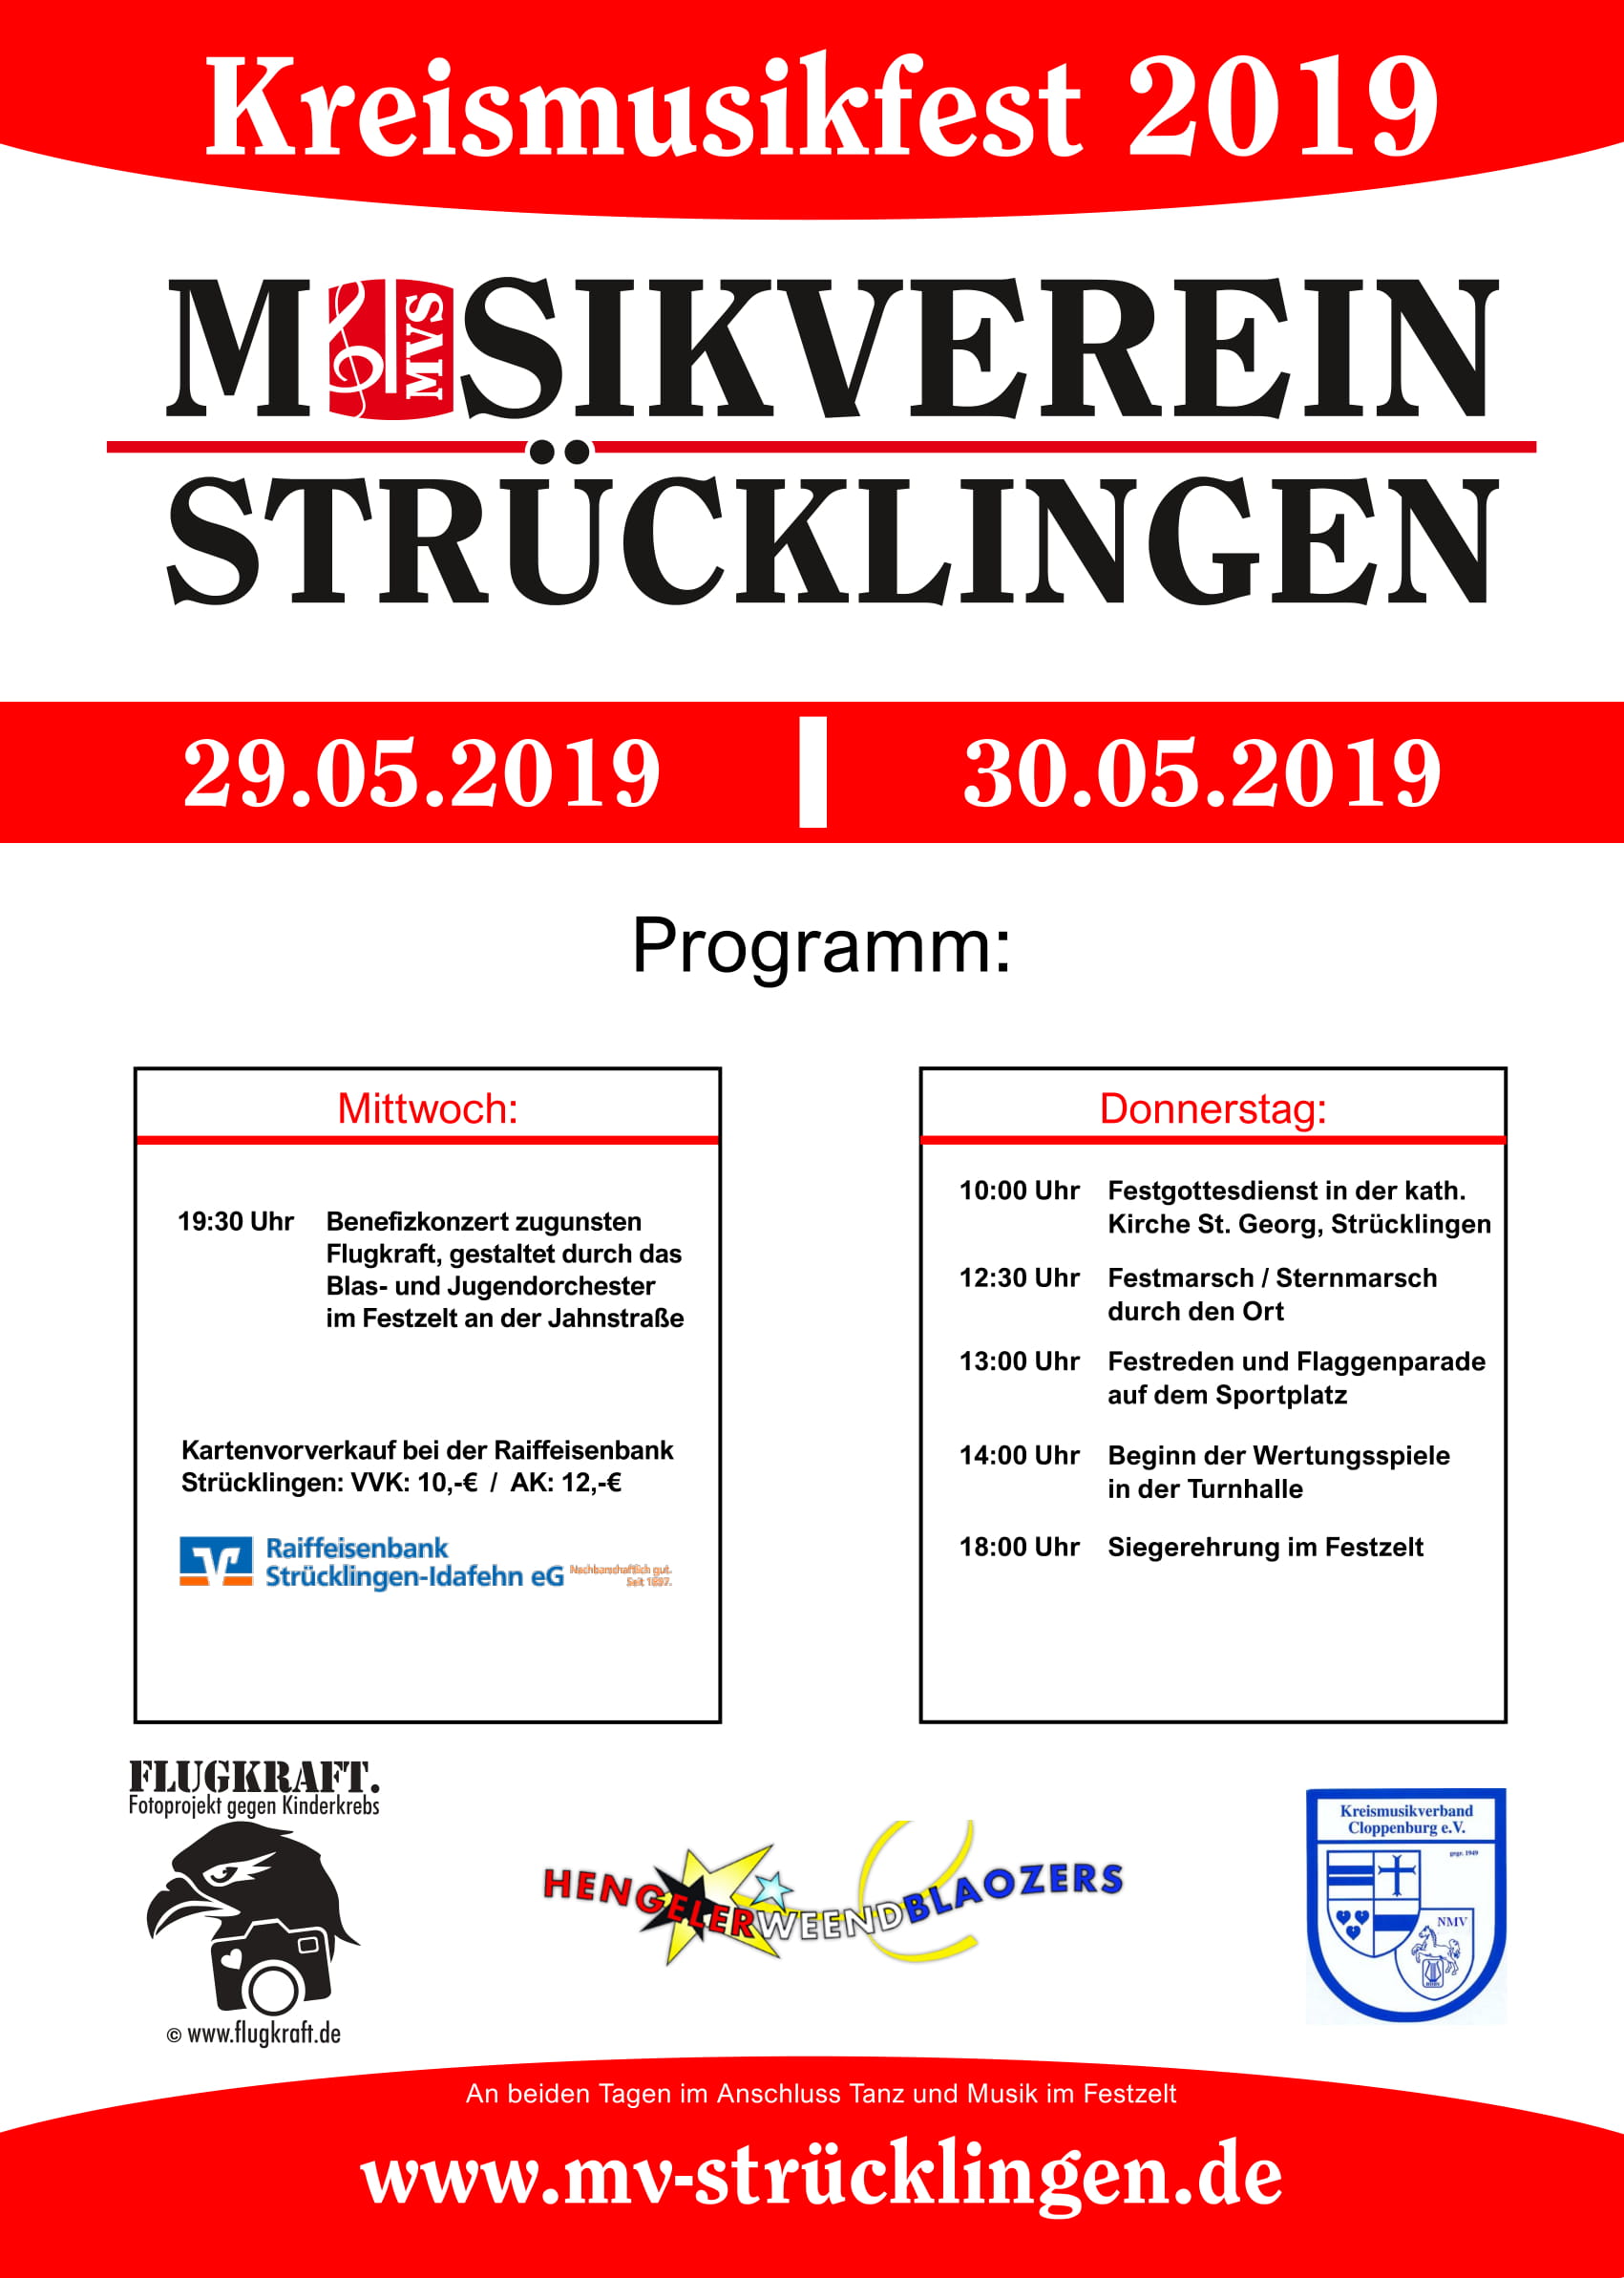 Programm zum Kreismusikfest 2019 in Strücklingen